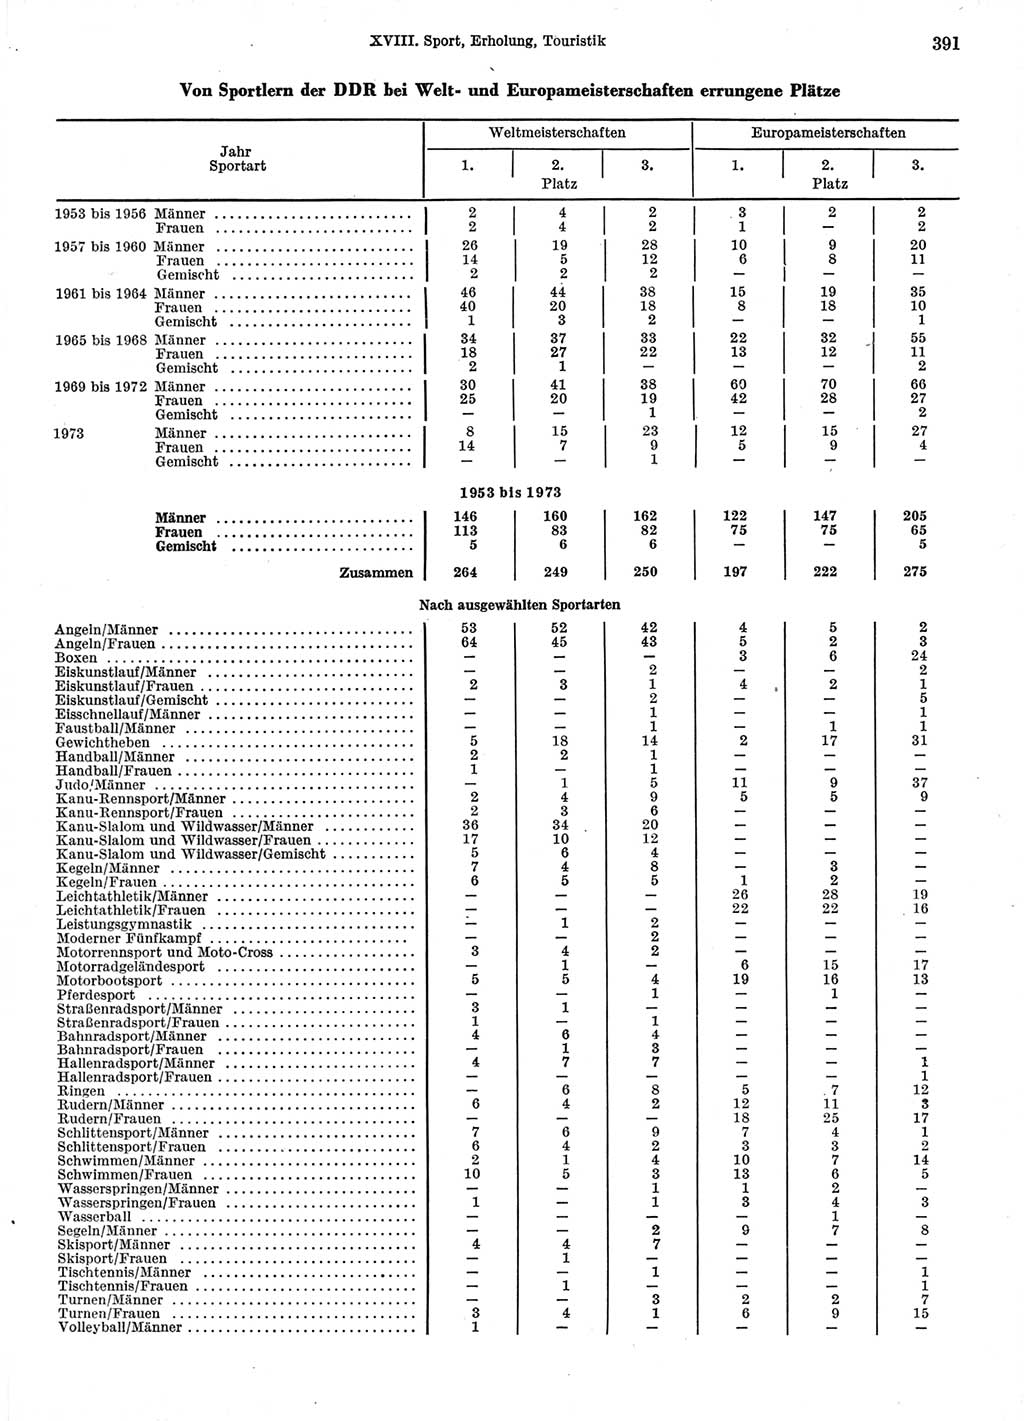 Statistisches Jahrbuch der Deutschen Demokratischen Republik (DDR) 1974, Seite 391 (Stat. Jb. DDR 1974, S. 391)